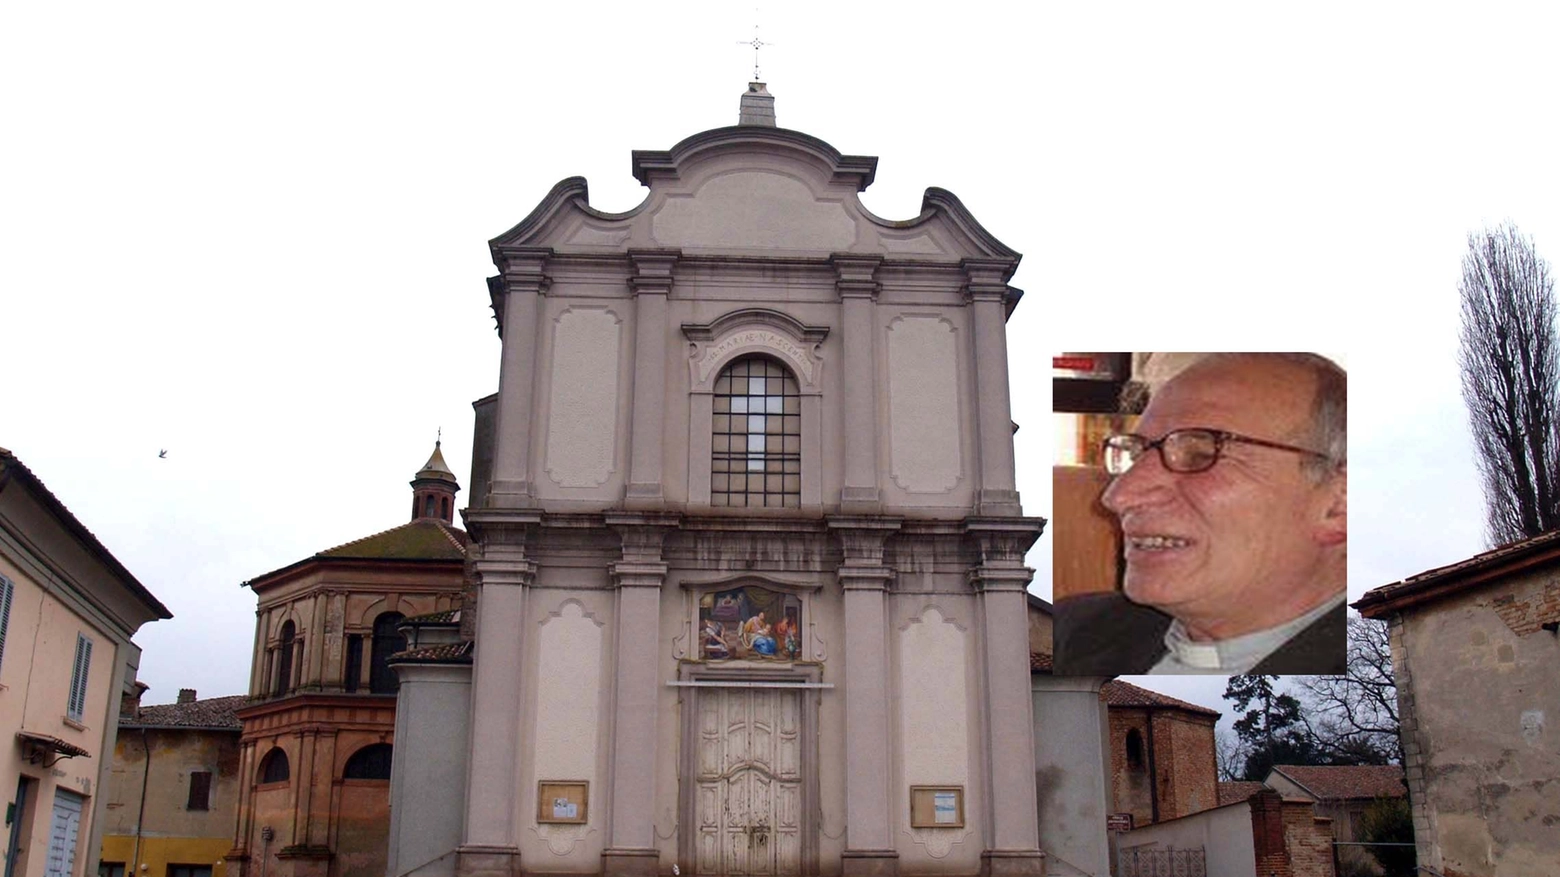 La chiesa di Castelnuovo Bocca d’Adda e il parroco don Antonio Boffelli (Gazzola)